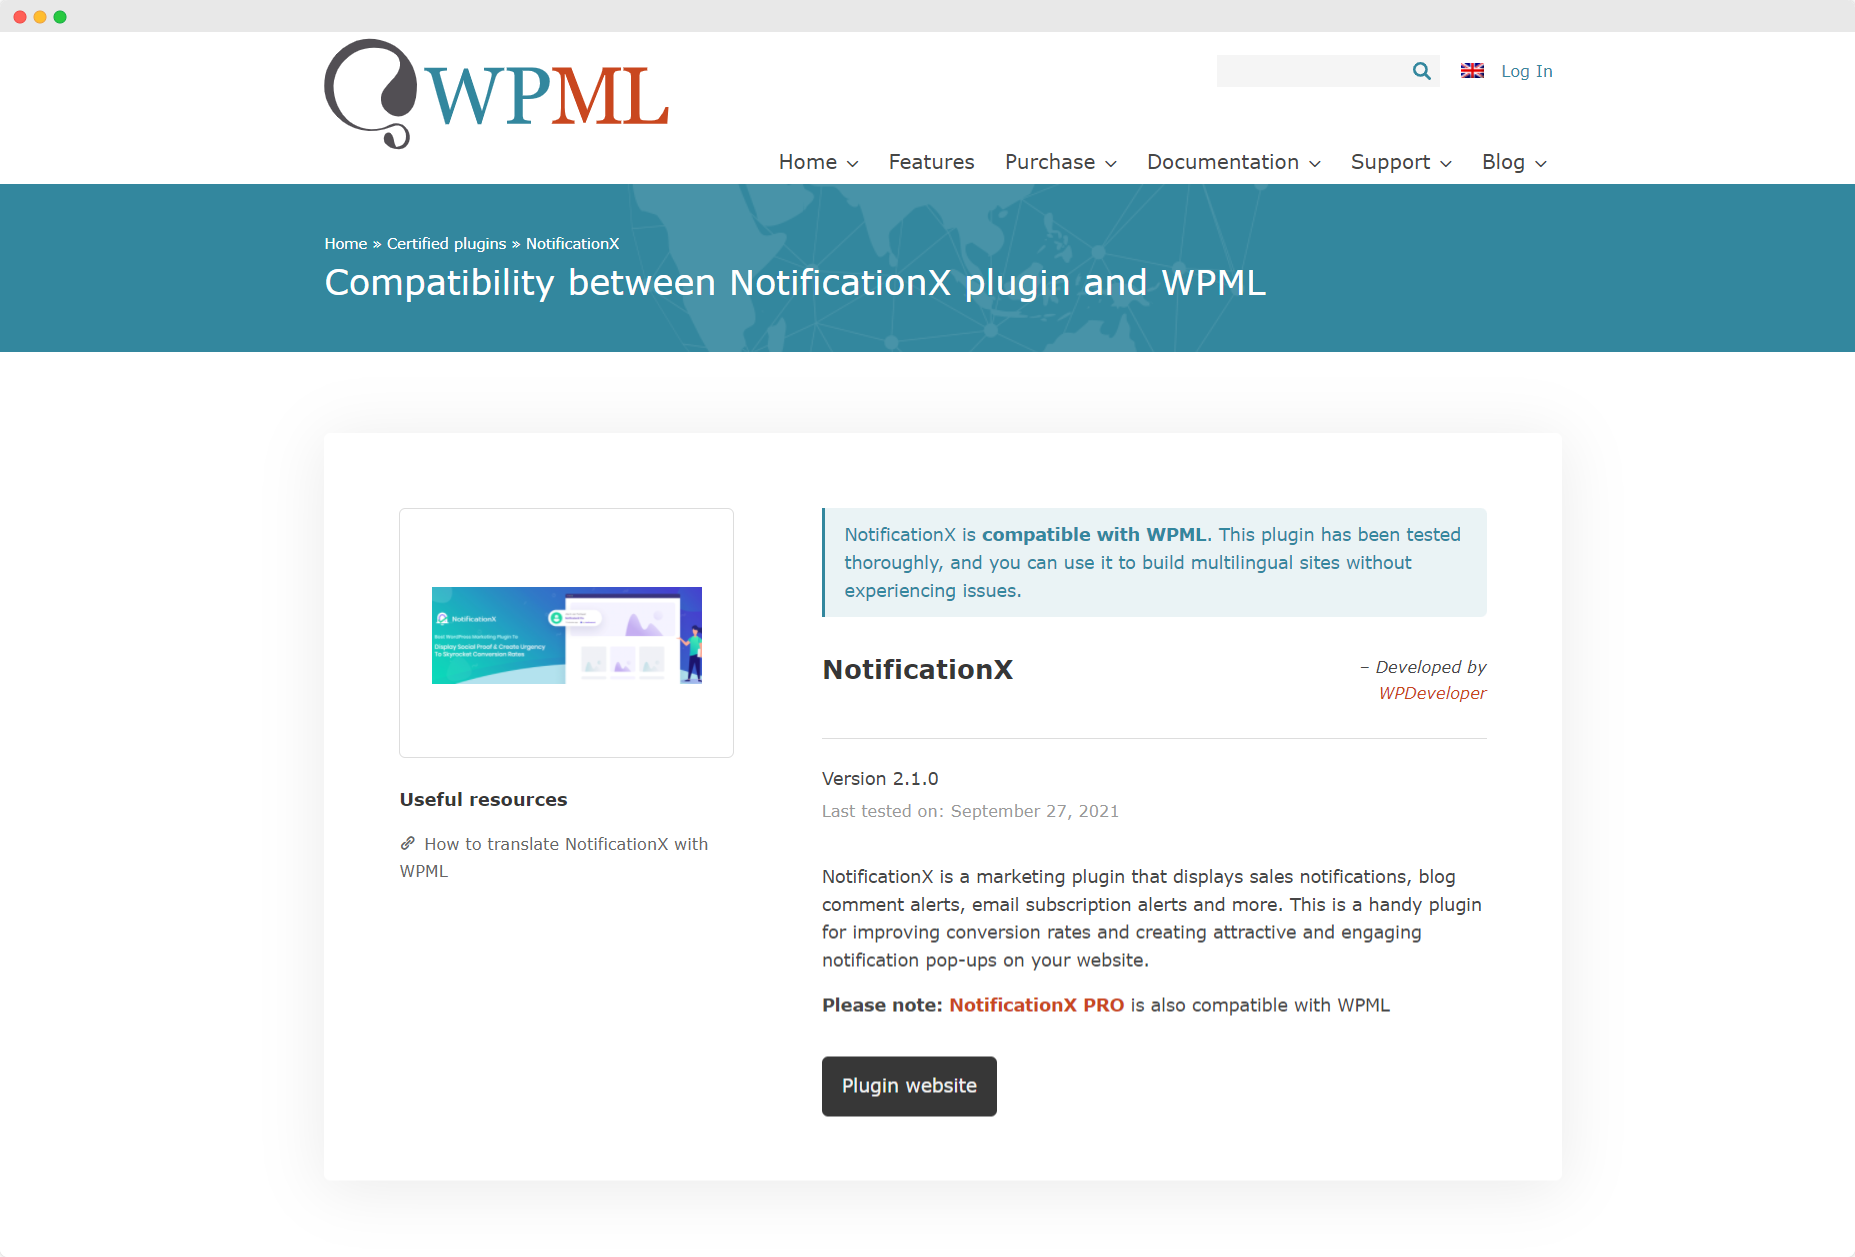 [NUEVO] NotificationX ahora es compatible con WPML